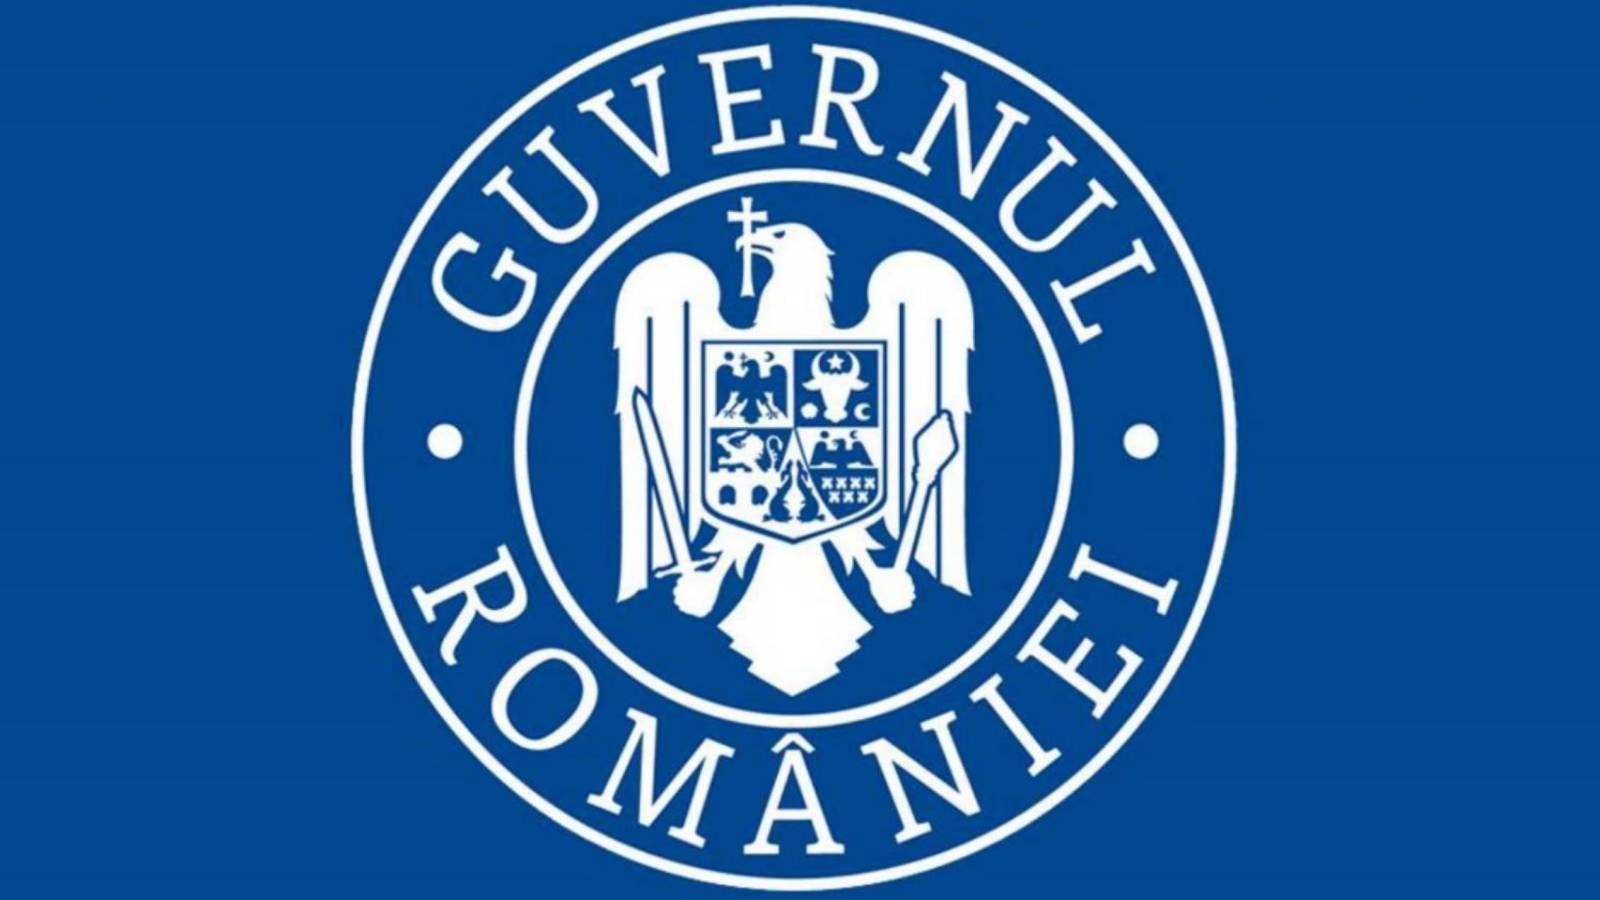 Ograniczenia Decyzja rządu Rumunii